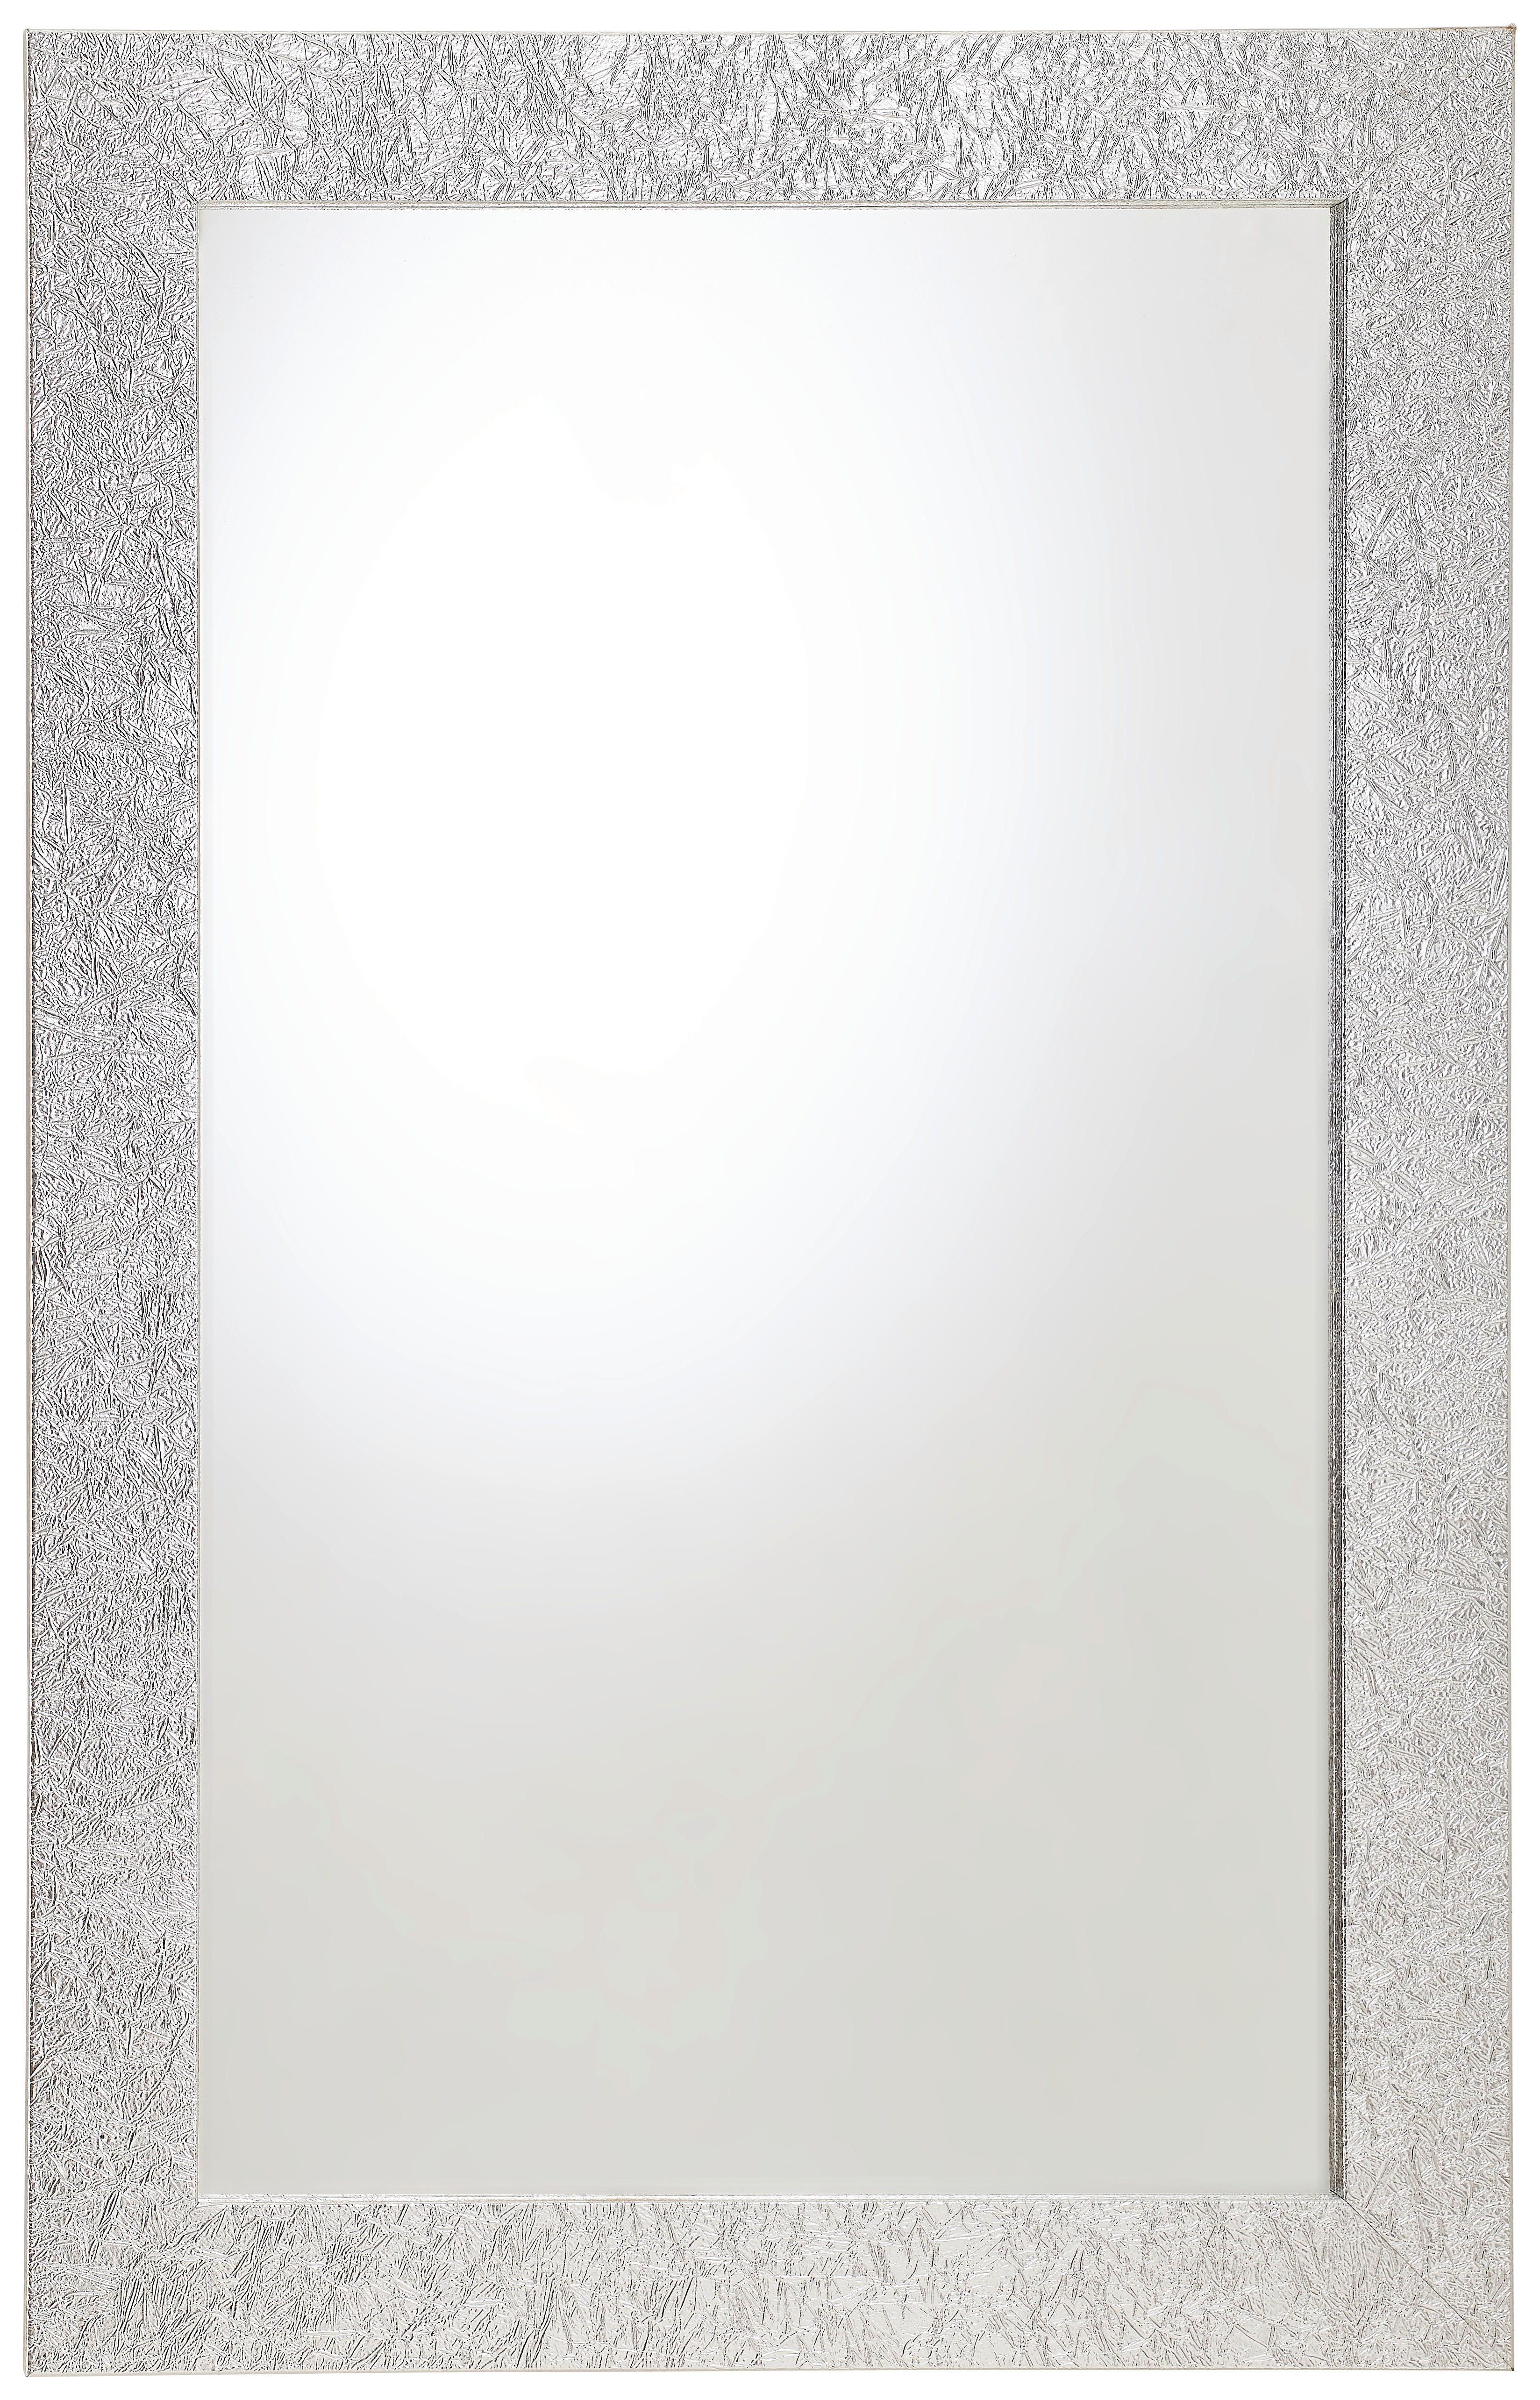 VÄGGSPEGEL 70/110/2,8 cm    - silver, Klassisk, glas/träbaserade material (70/110/2,8cm) - Carryhome